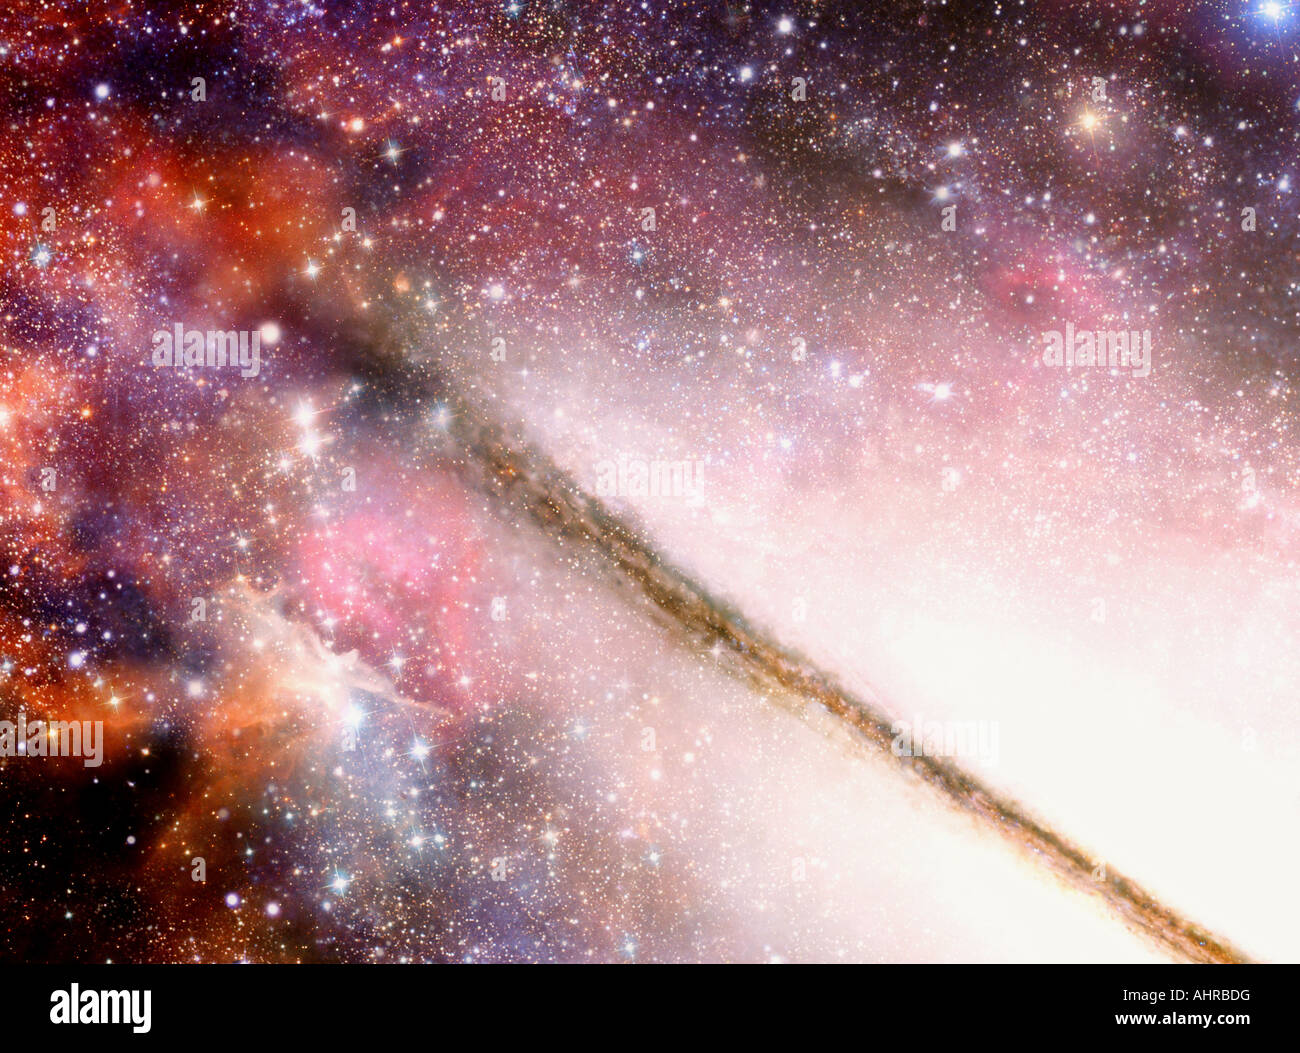 Molto affascinante illustrazione di una spettacolare visione all'interno della galassia a spirale Foto Stock